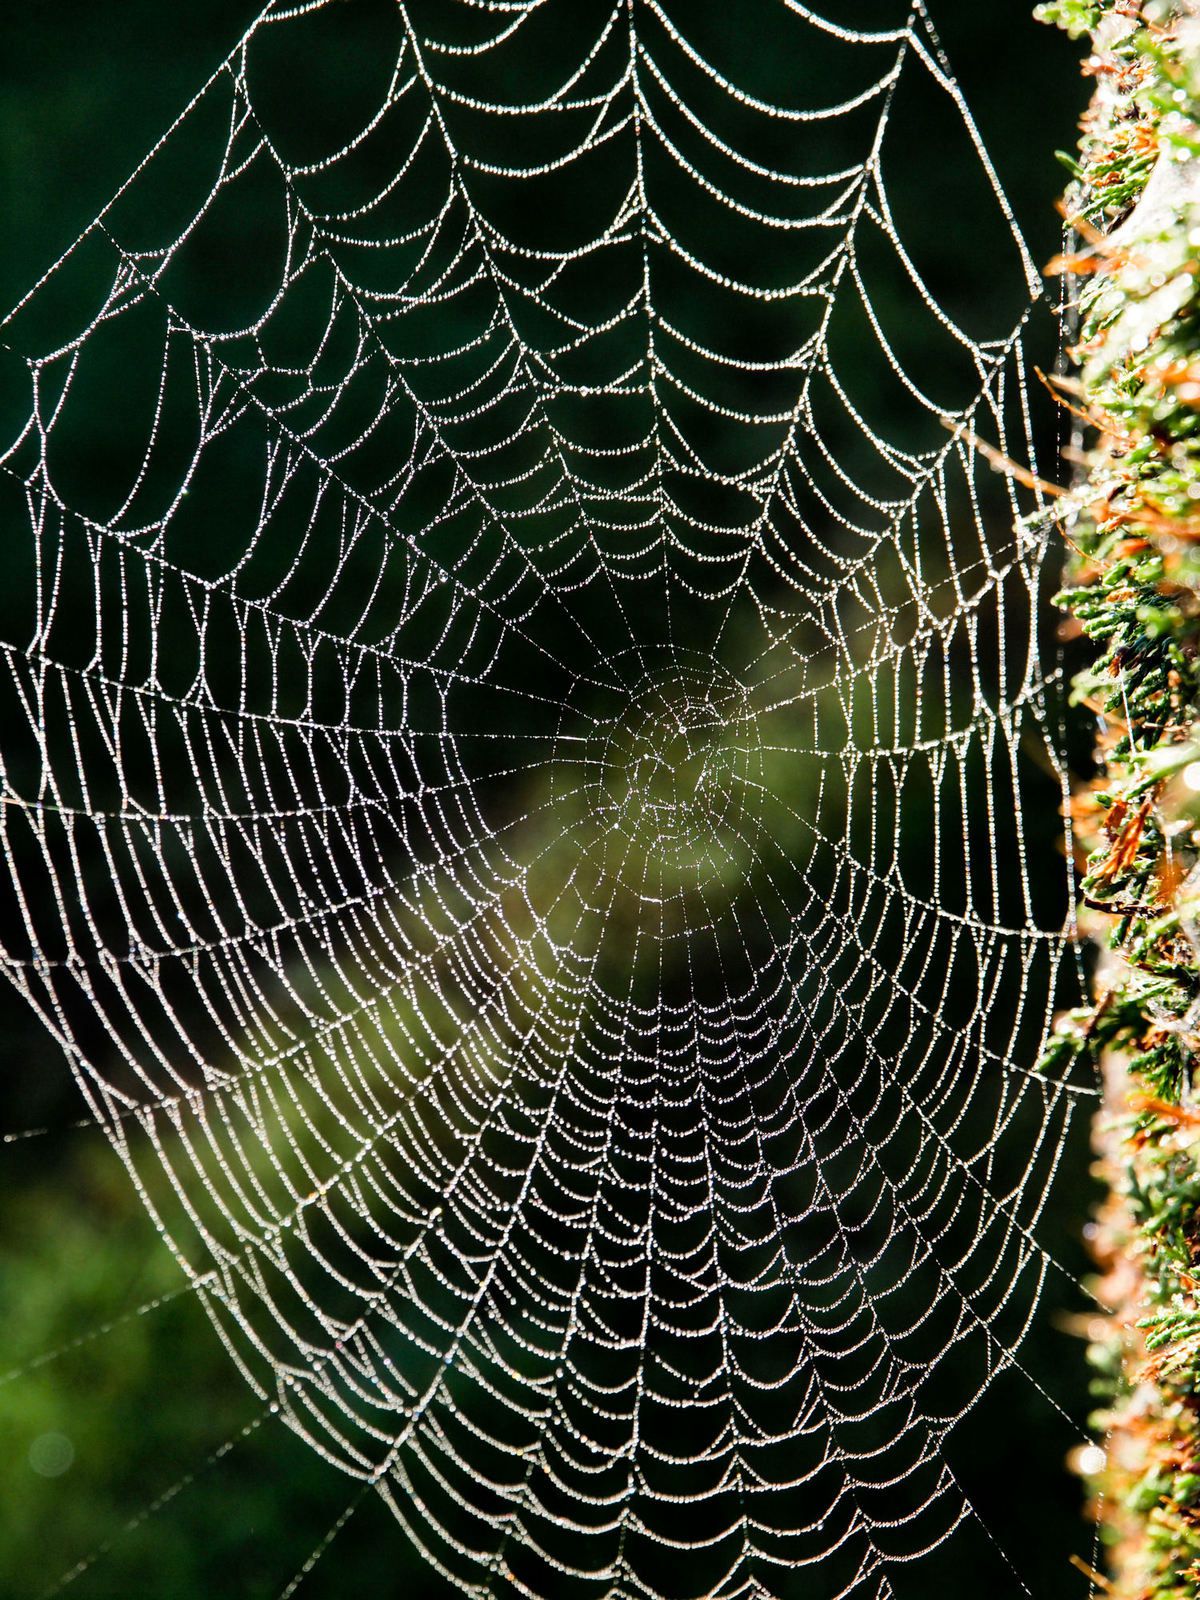 Aussi effrayantes soient-elles, les araignées font un travail incroyable en ce qui concerne leurs toiles. En tissant leur fil de soie, elles créent de fascinantes formes qui peuvent atteindre jusqu'à deux mètres de diamètre. 